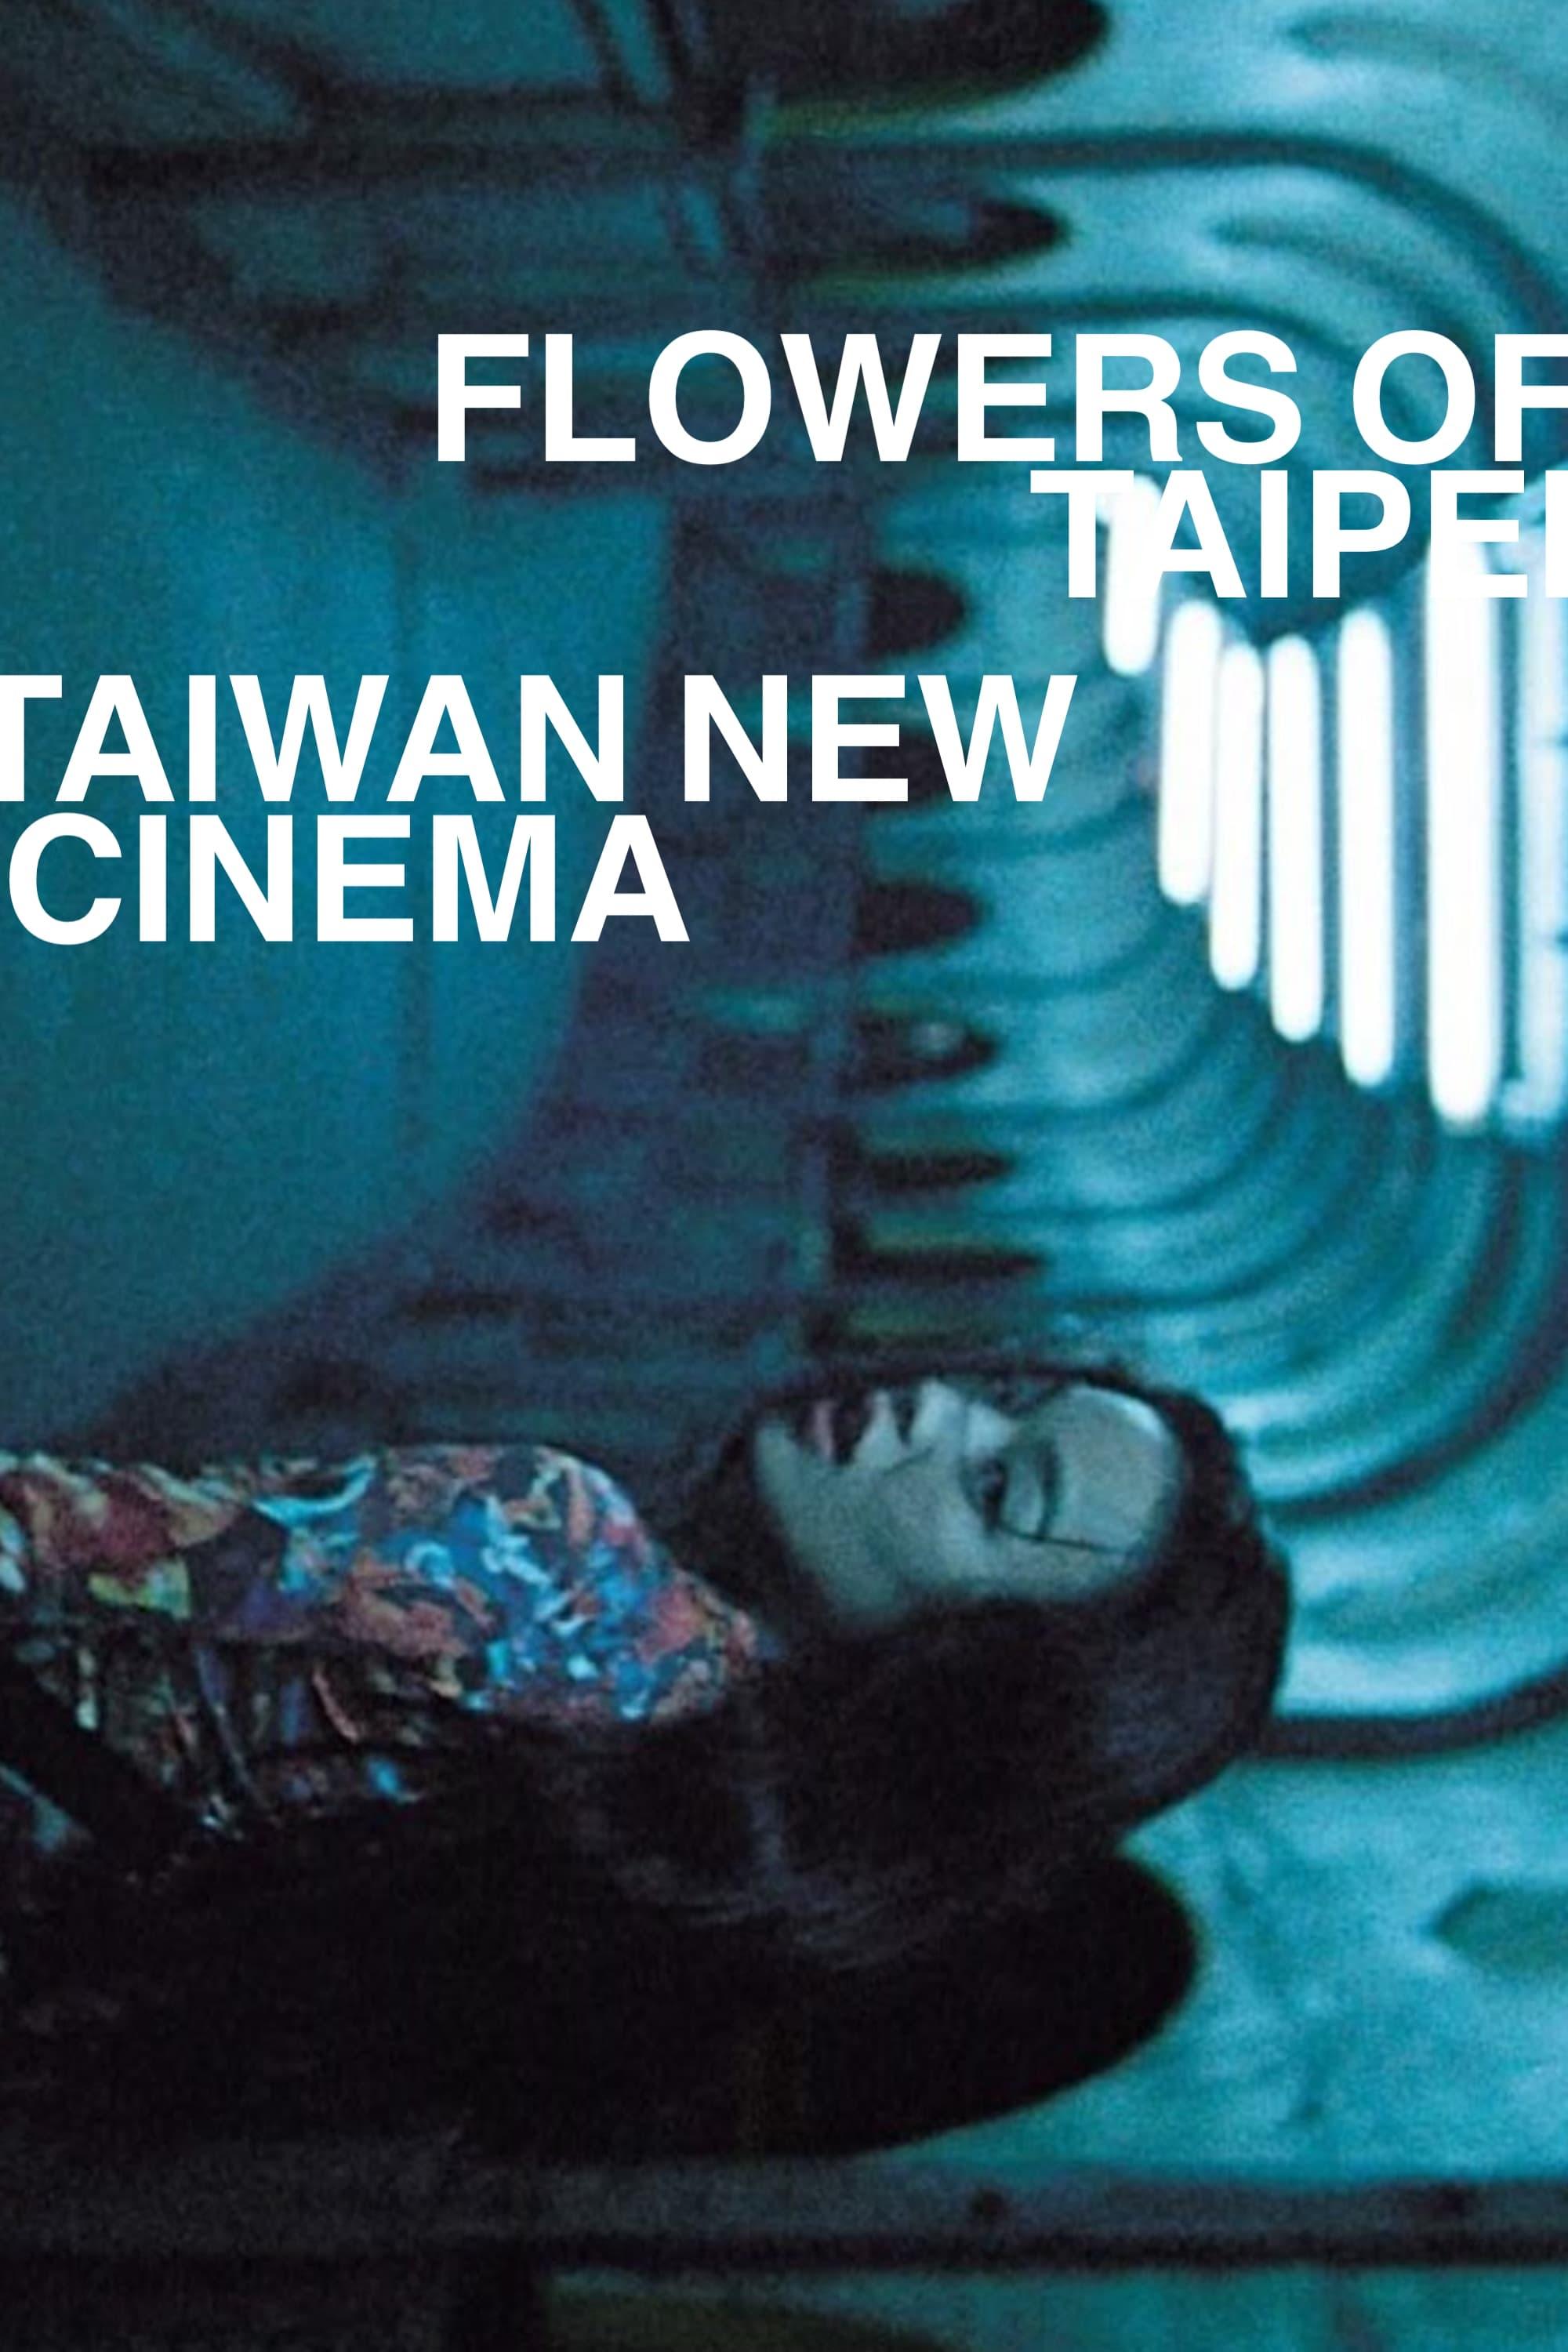 Flowers of Taipei: Taiwan New Cinema poster